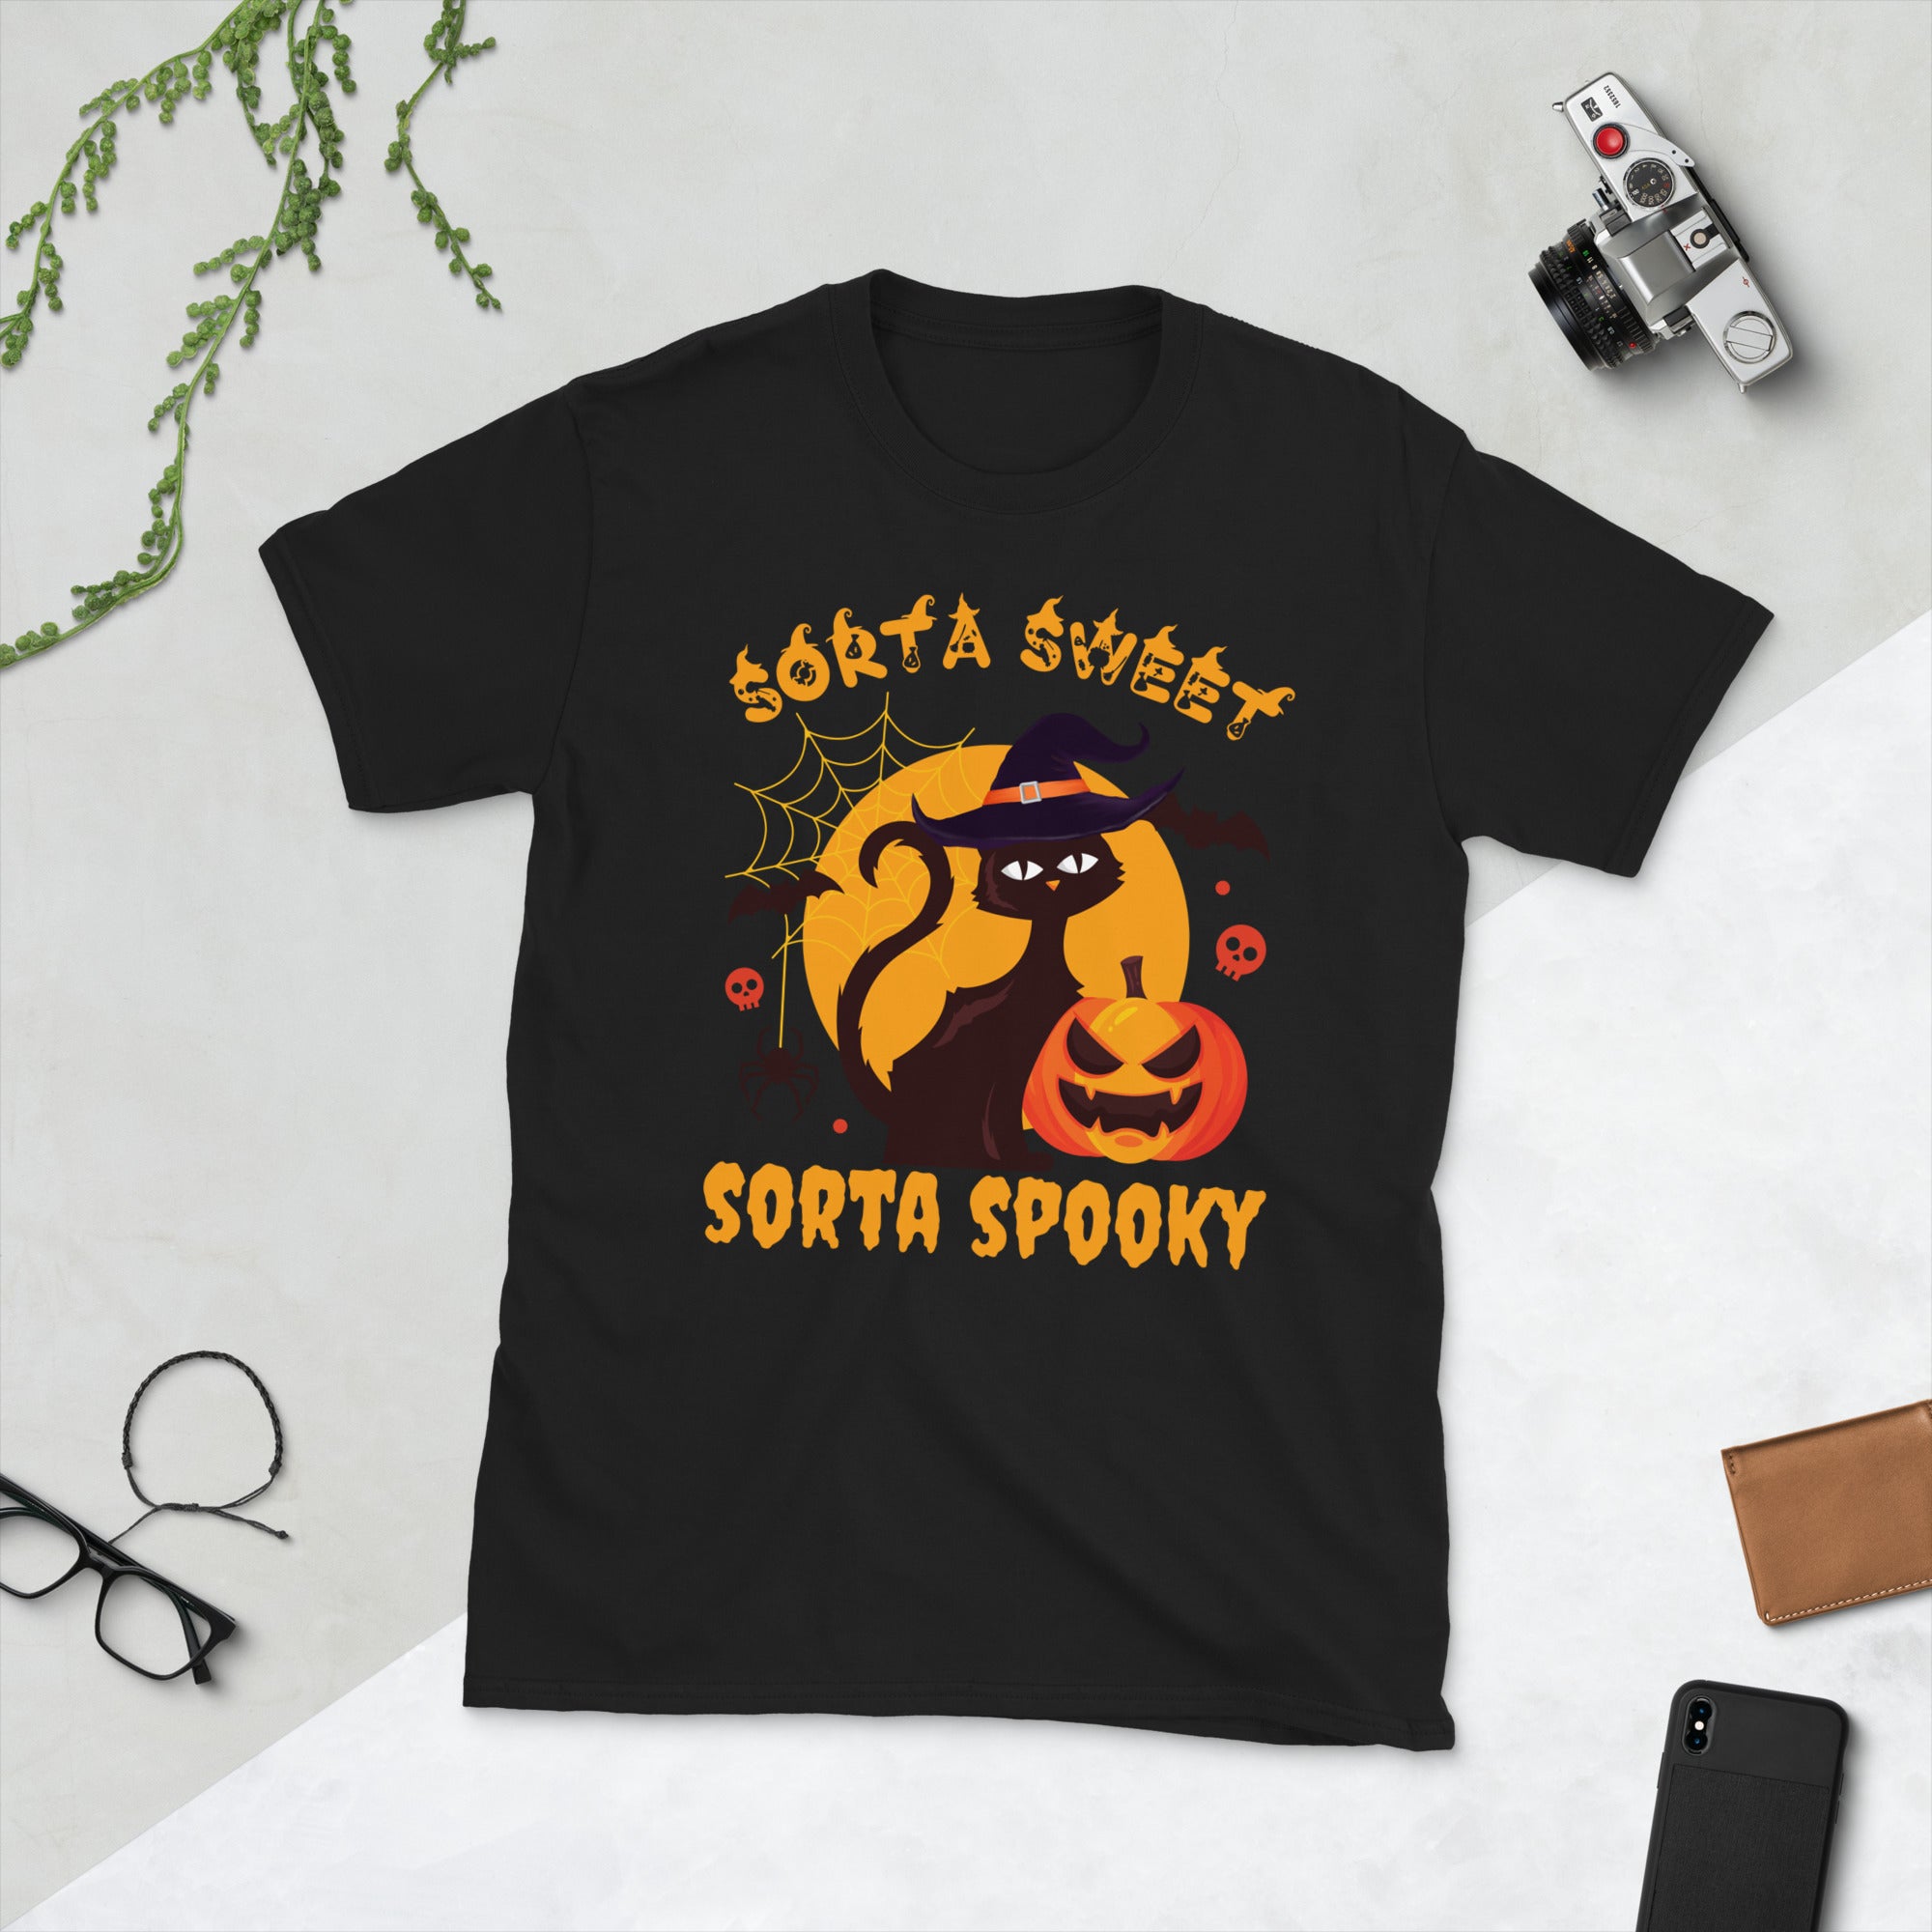 Sorta Sweet Sorta Spooky, divertida camisa de disfraz de Halloween de gato brujo, camisa de gato de calabaza, camisa de temporada espeluznante, regalos divertidos para amantes de los gatos de Halloween